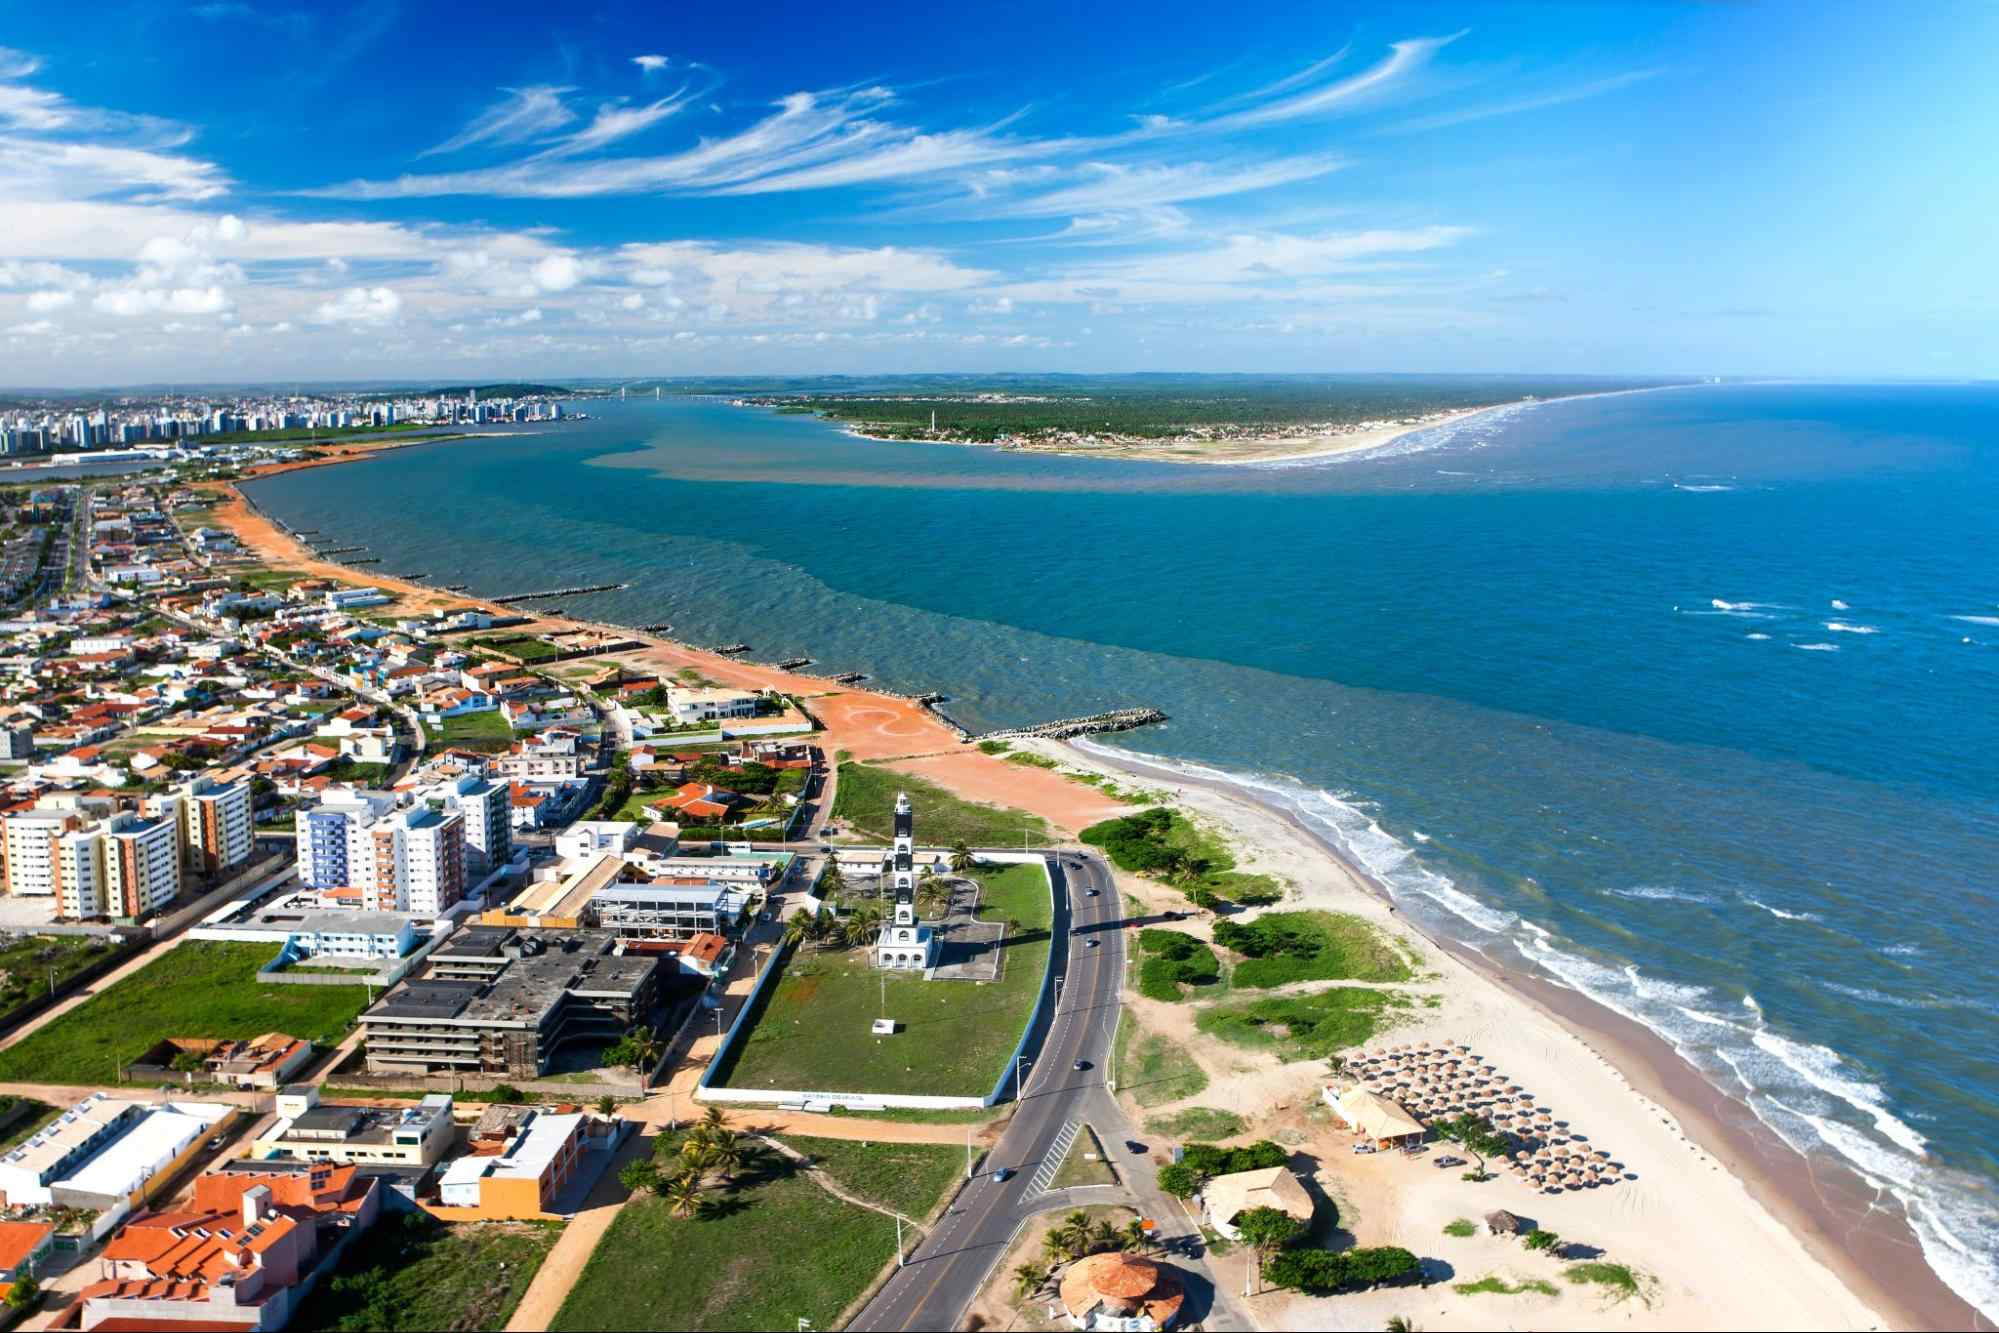 Vista aérea da zona costeira de Aracaju, capital de Sergipe. A paisagem urbana é composta por prédios baixos e áreas verdes que encontram uma longa faixa de areia dourada. Depois dela, aparece um mar azul que se estende até o horizonte.